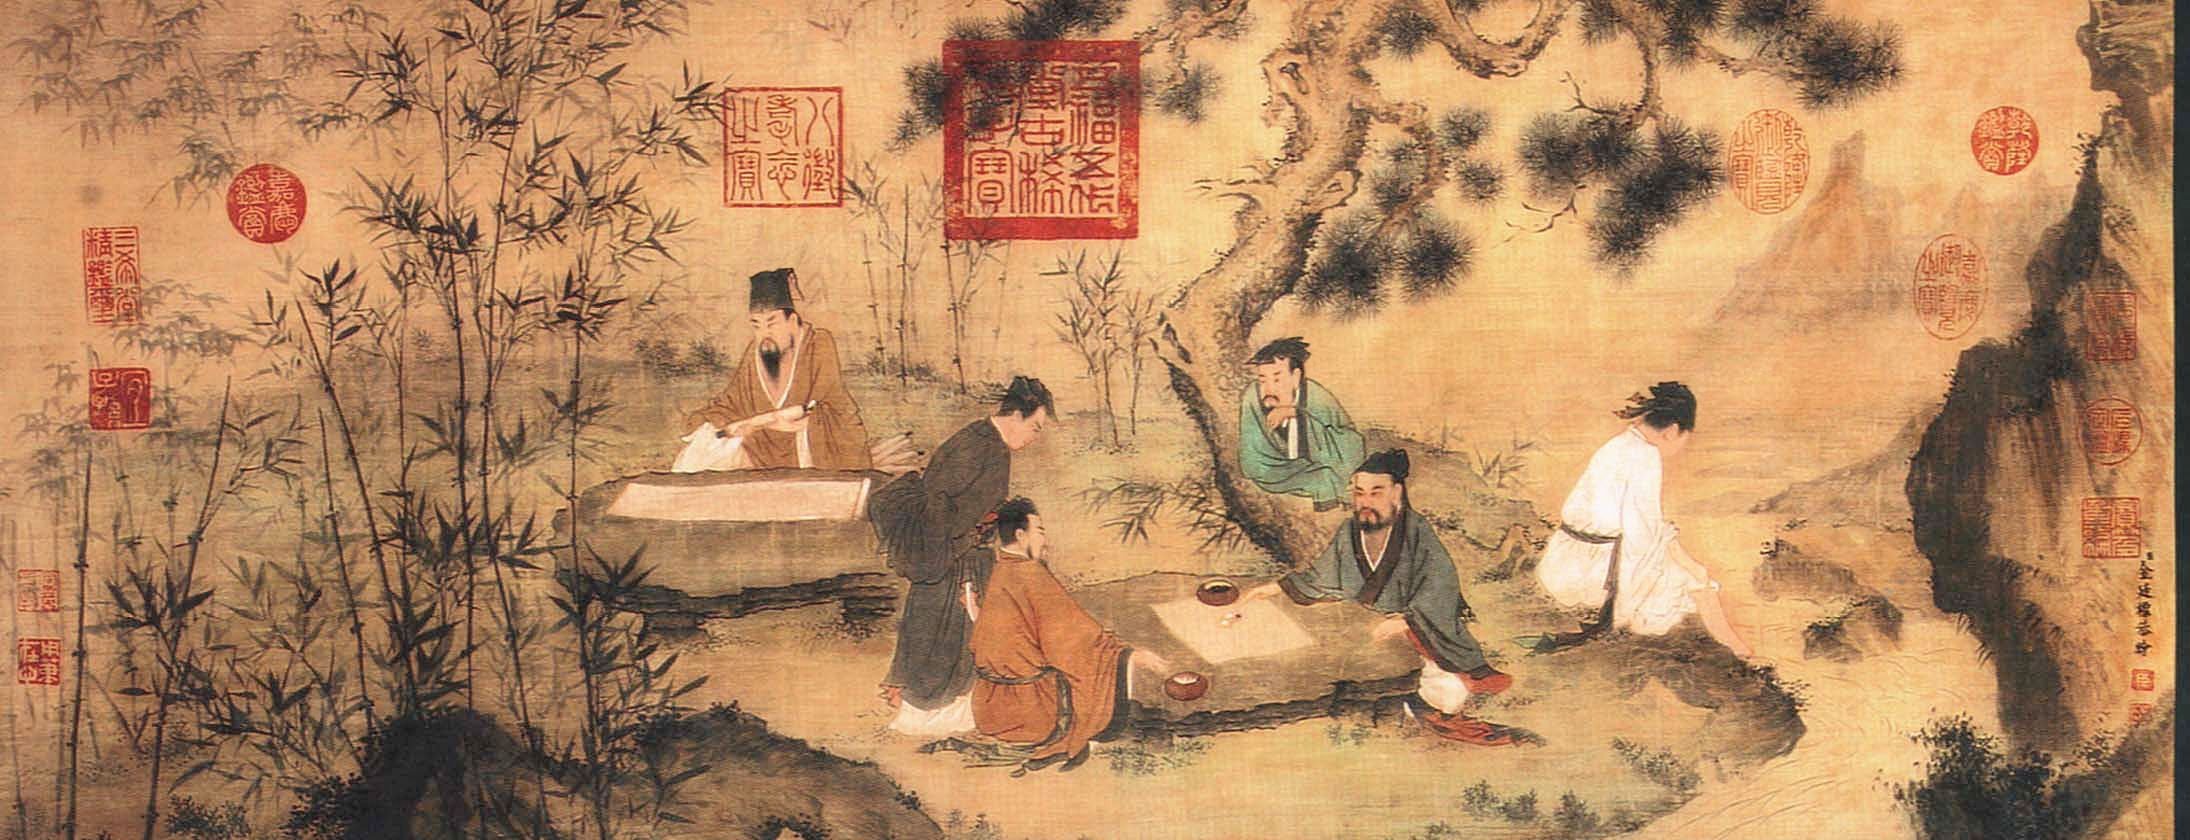 Цзюнь цзы. Китайская живопись Конфуций. Философия Китая Конфуций. Древний Китай Конфуций. Конфуцианство в древнем Китае.